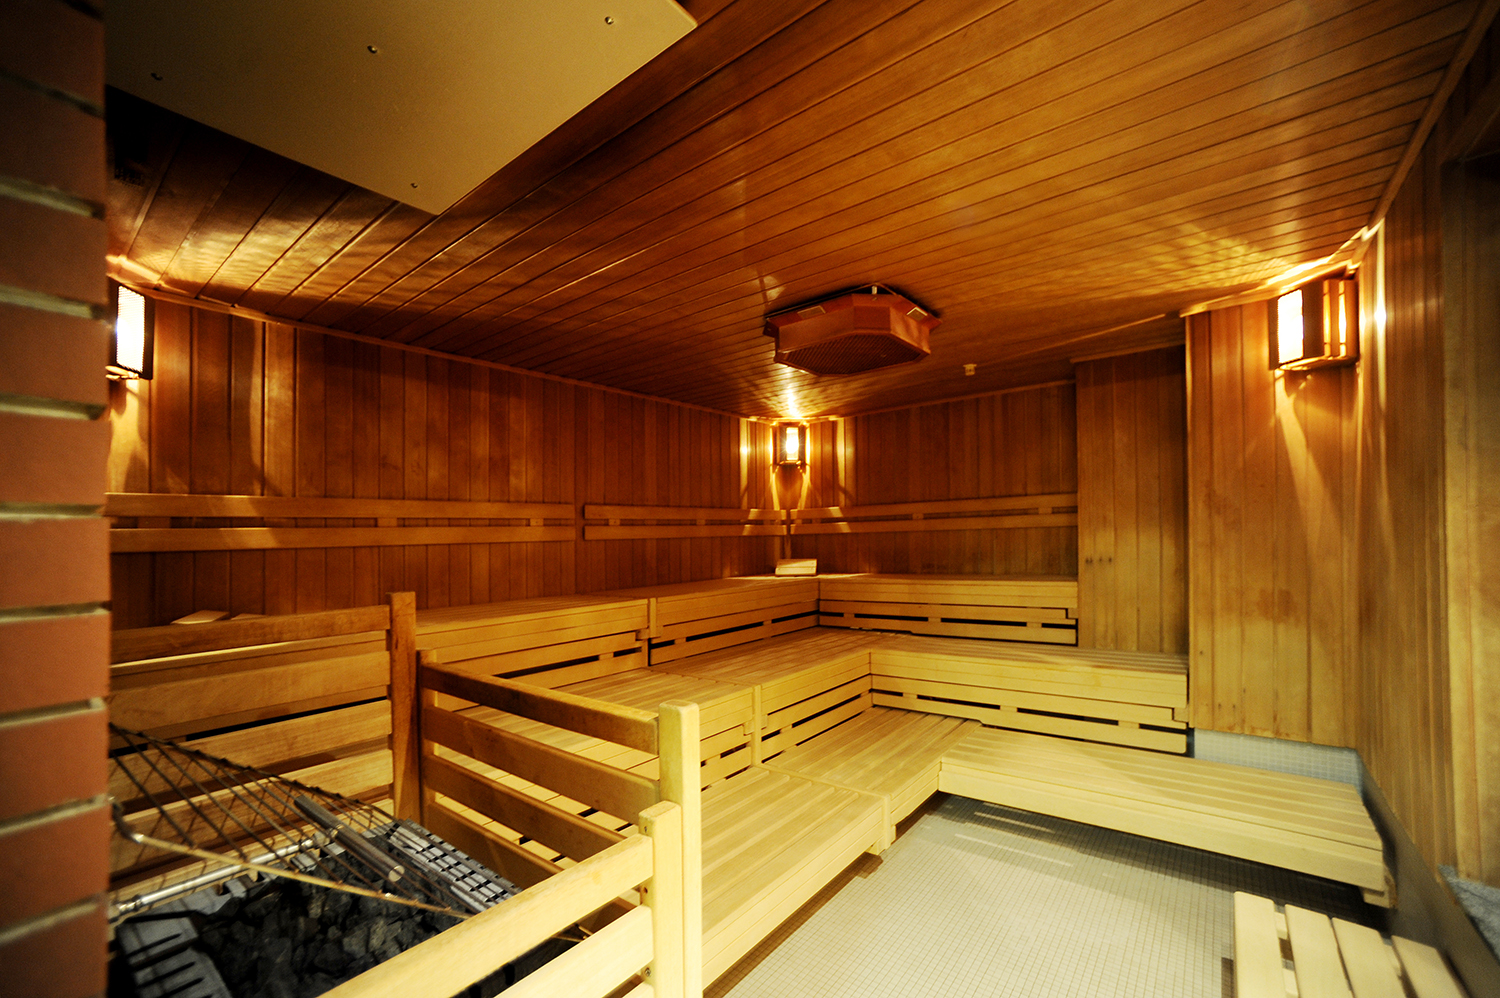 In der kleinen Saunakammer wird der Aufguss theoretisch automatisch gemacht, sollte sich kein Freiwilliger finden. Foto: IKB